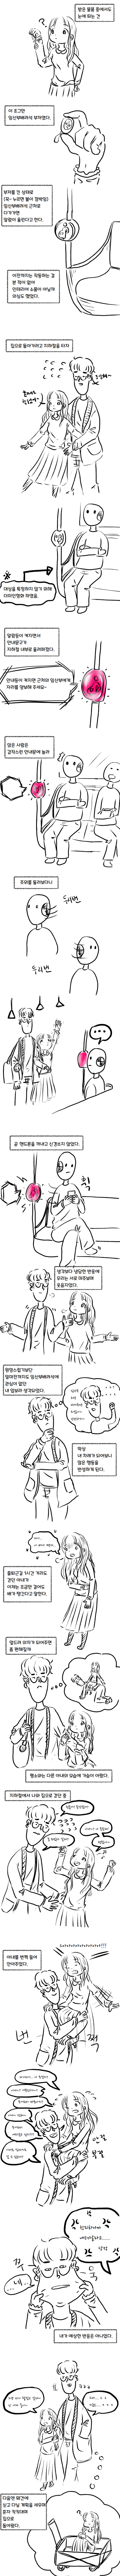 노잼 리얼결혼생활35(병원검진)manhwa